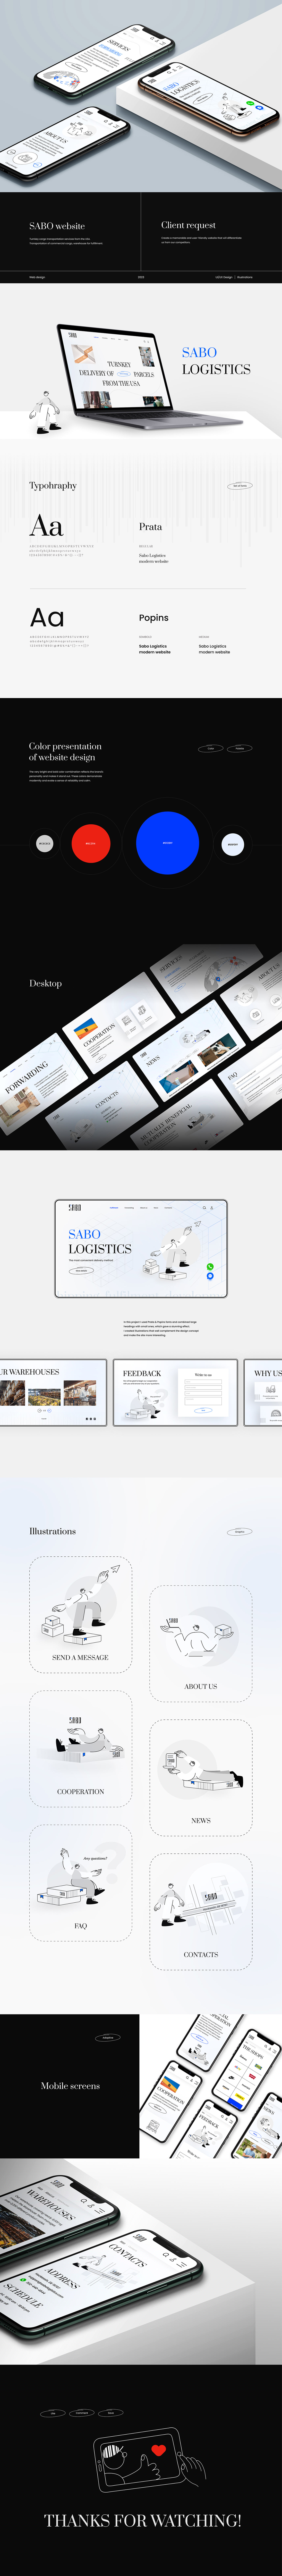 UI/UX Figma Web Design  Website ui design ux UI ILLUSTRATION  graphic design  design